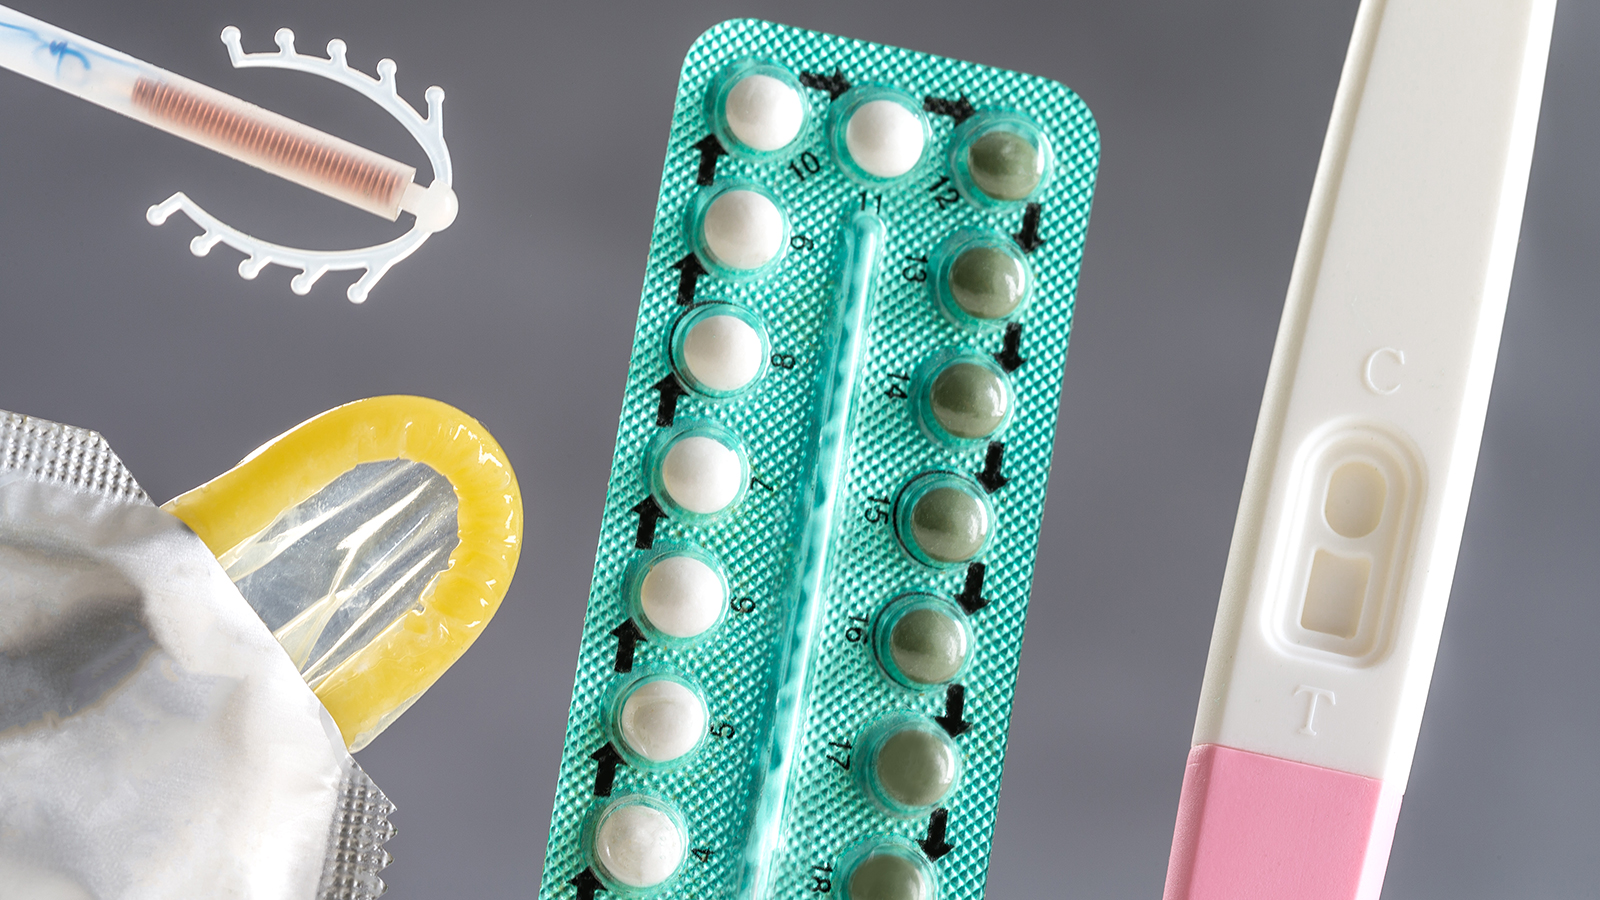 Abbildung von Pille und Kondom